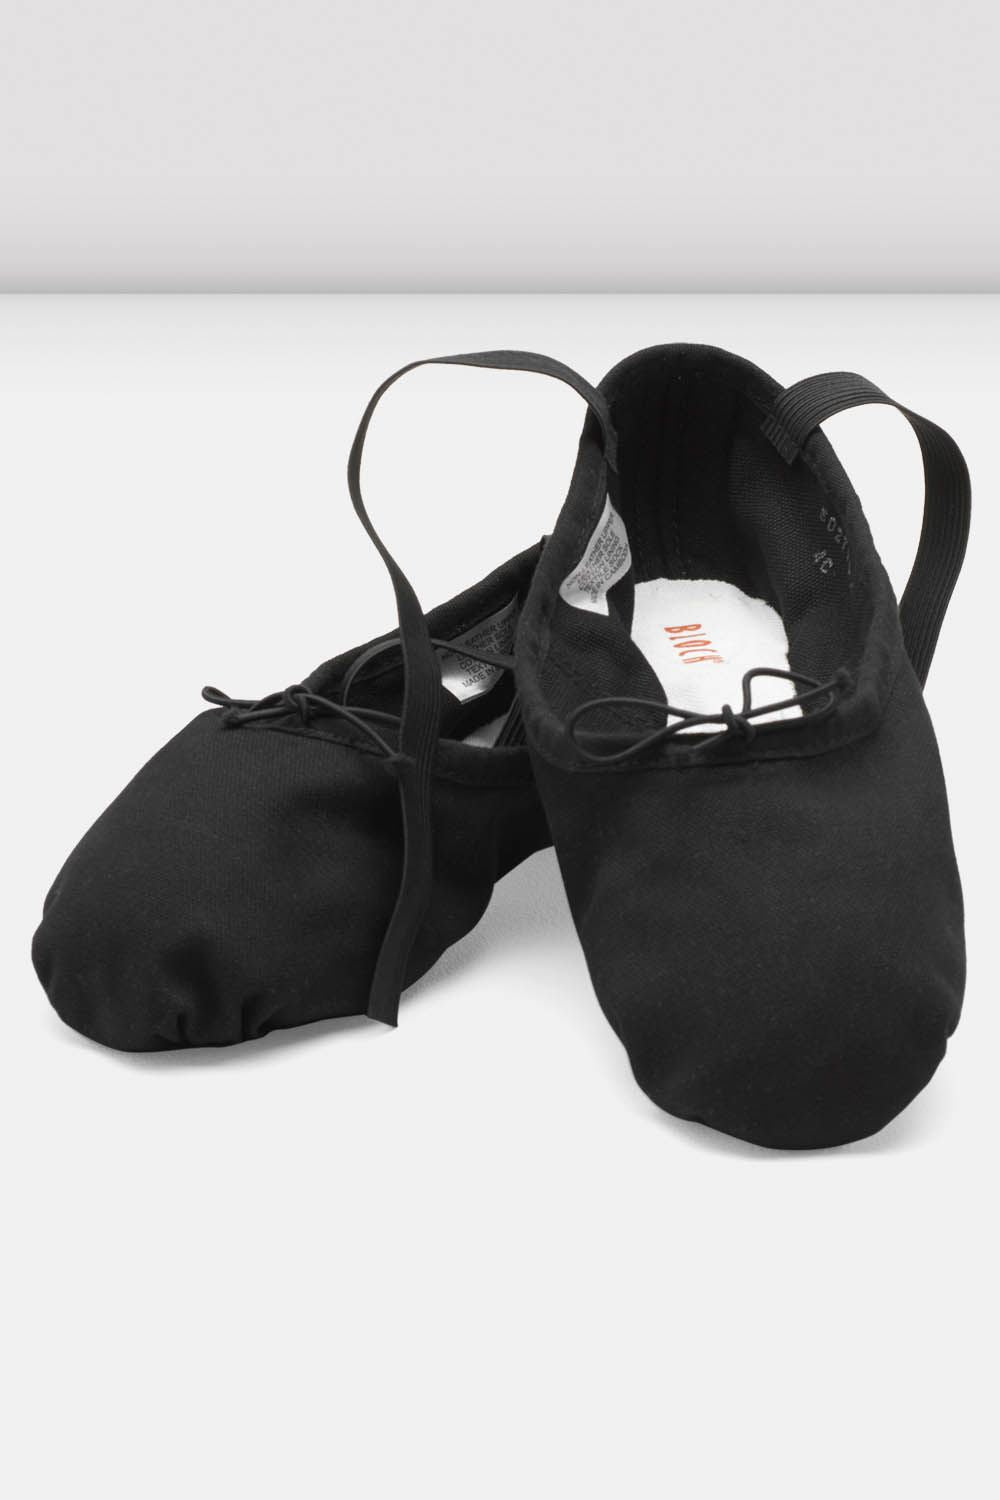 Ladies Pump Canvas Ballet Shoes, Black – BLOCH Dance US